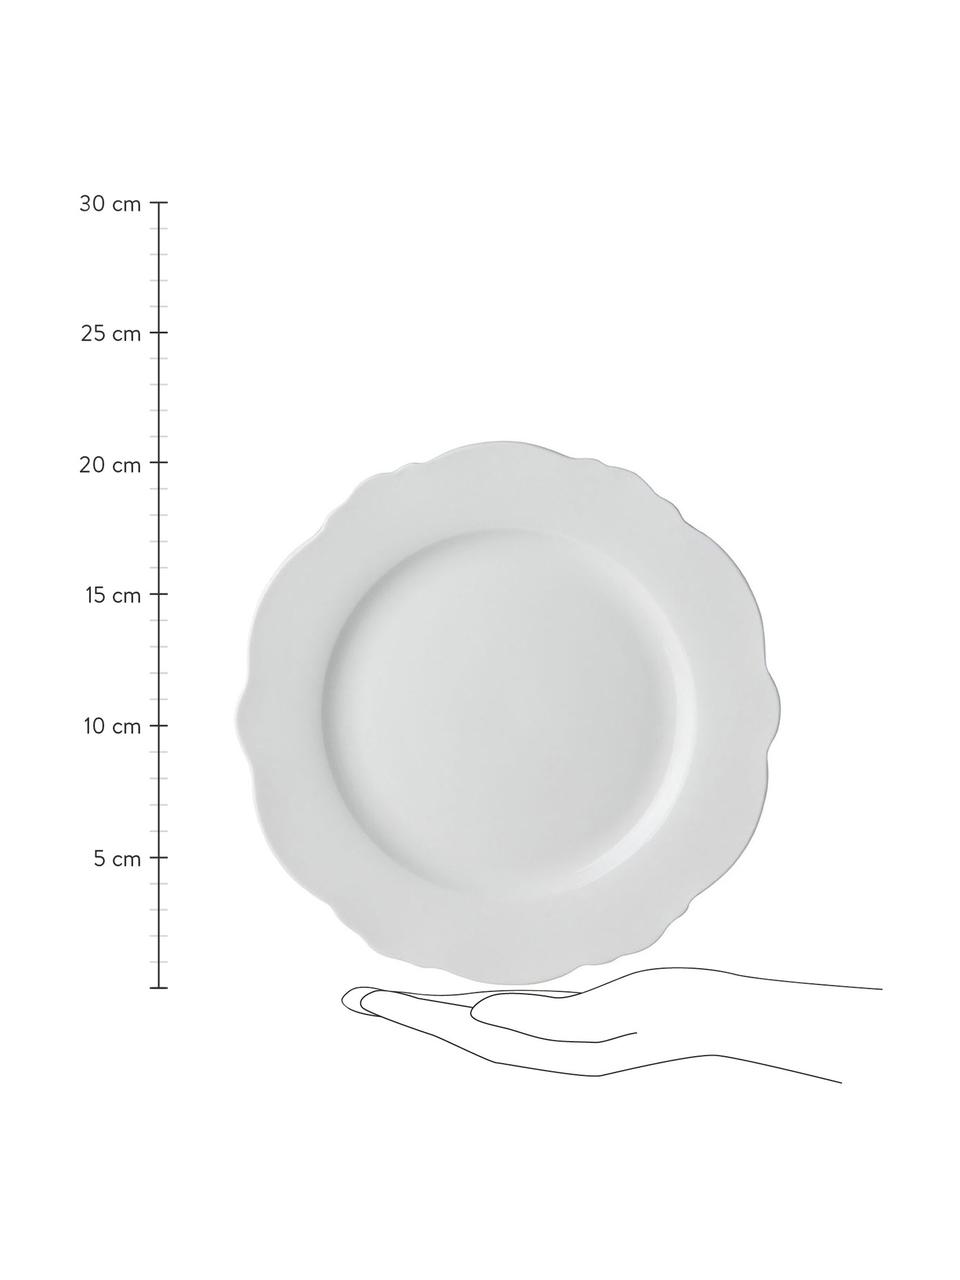 Snídaňový talíř se zakřiveným okrajem Muschel Loft, 4 ks, Porcelán, Bílá, Ø 21 cm, V 2 cm